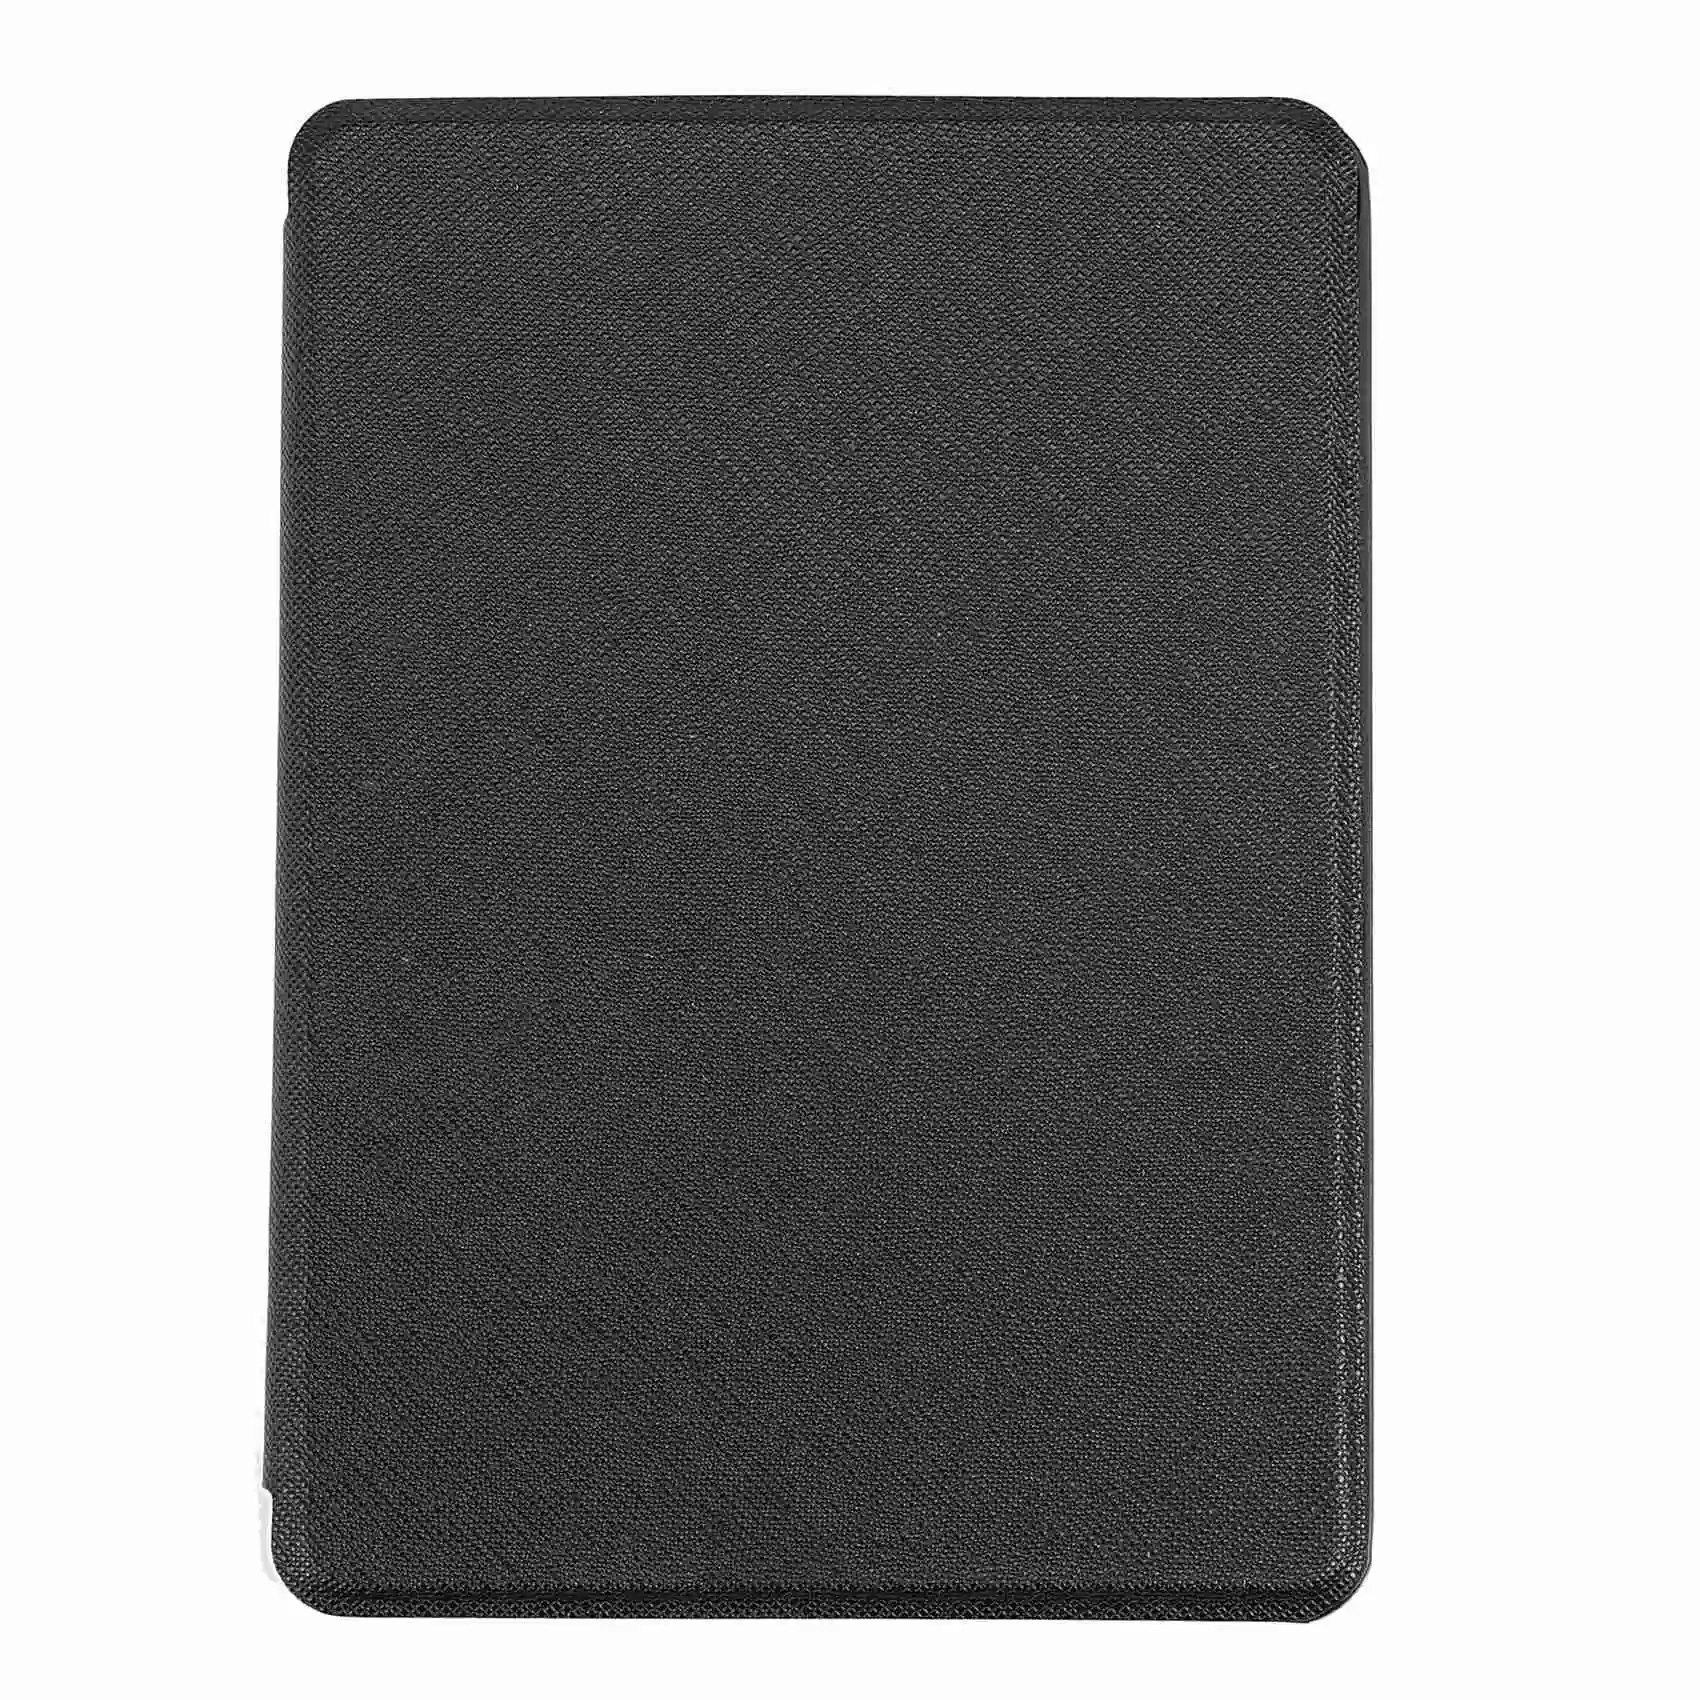 Чехол для Amazon Kindle 10Th 6 дюймов 2019 со встроенной читалкой с подсветкой спереди, Новый Kindle Press 10-го поколения 2019, черный 0